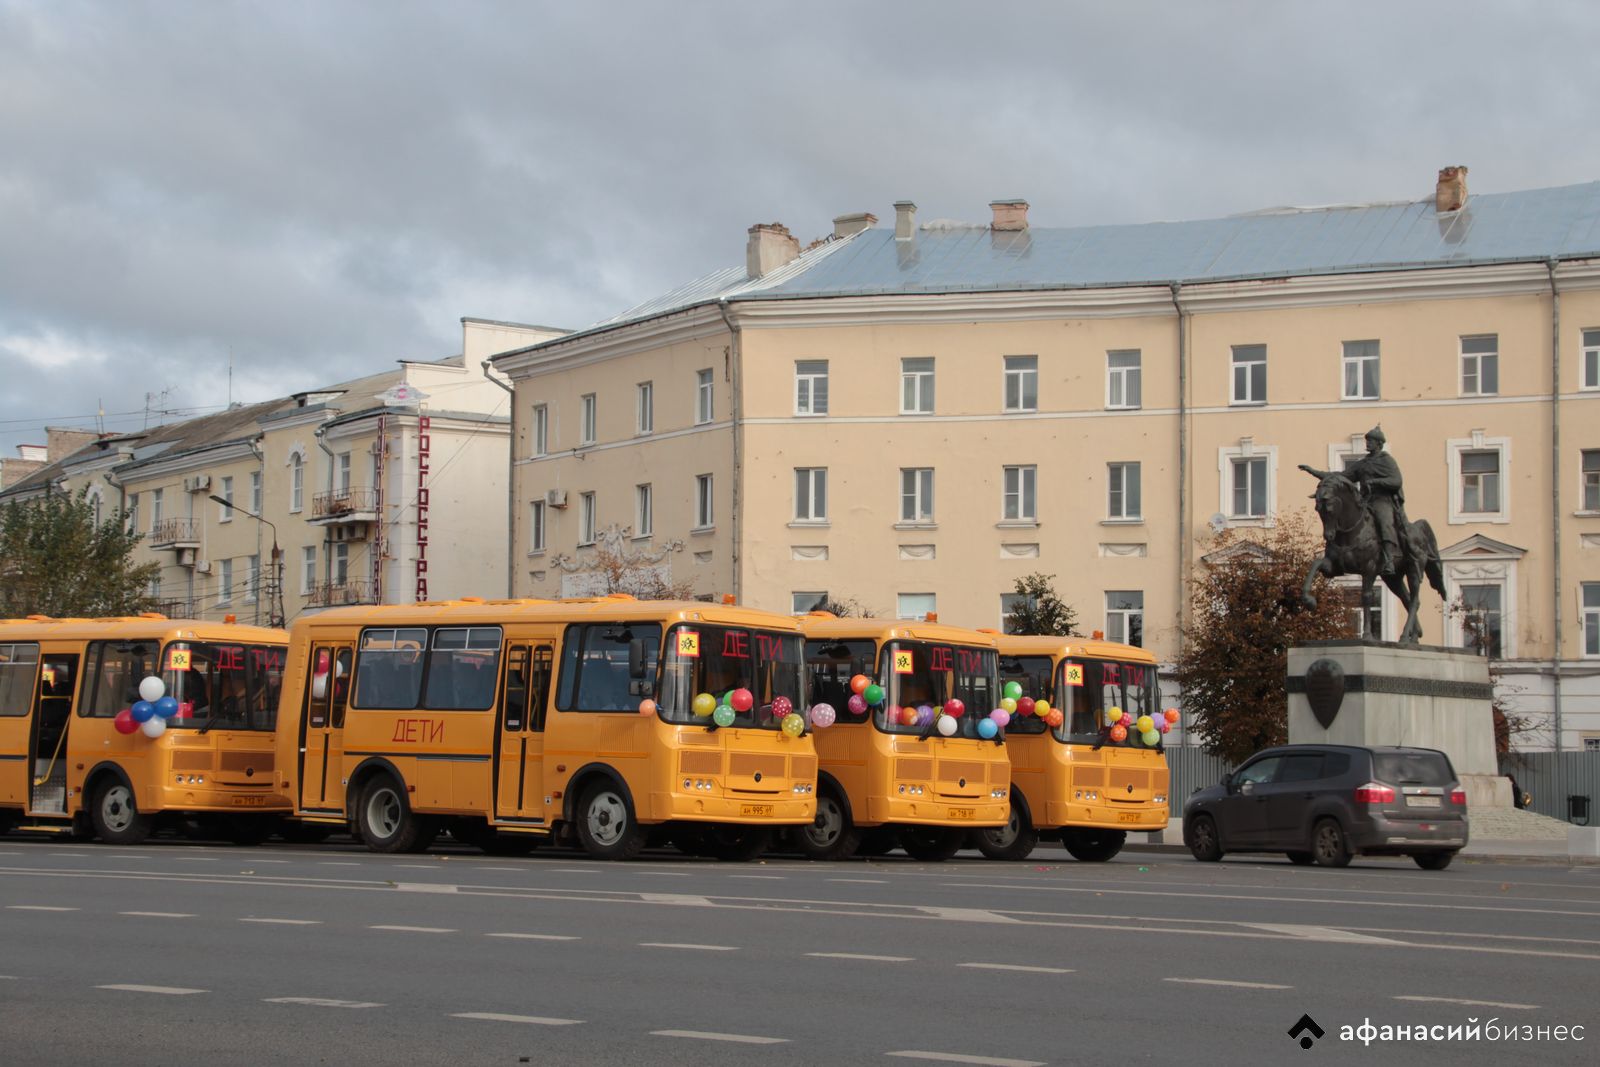 Районам Тверской области передали новые машины скорой помощи и школьные автобусы